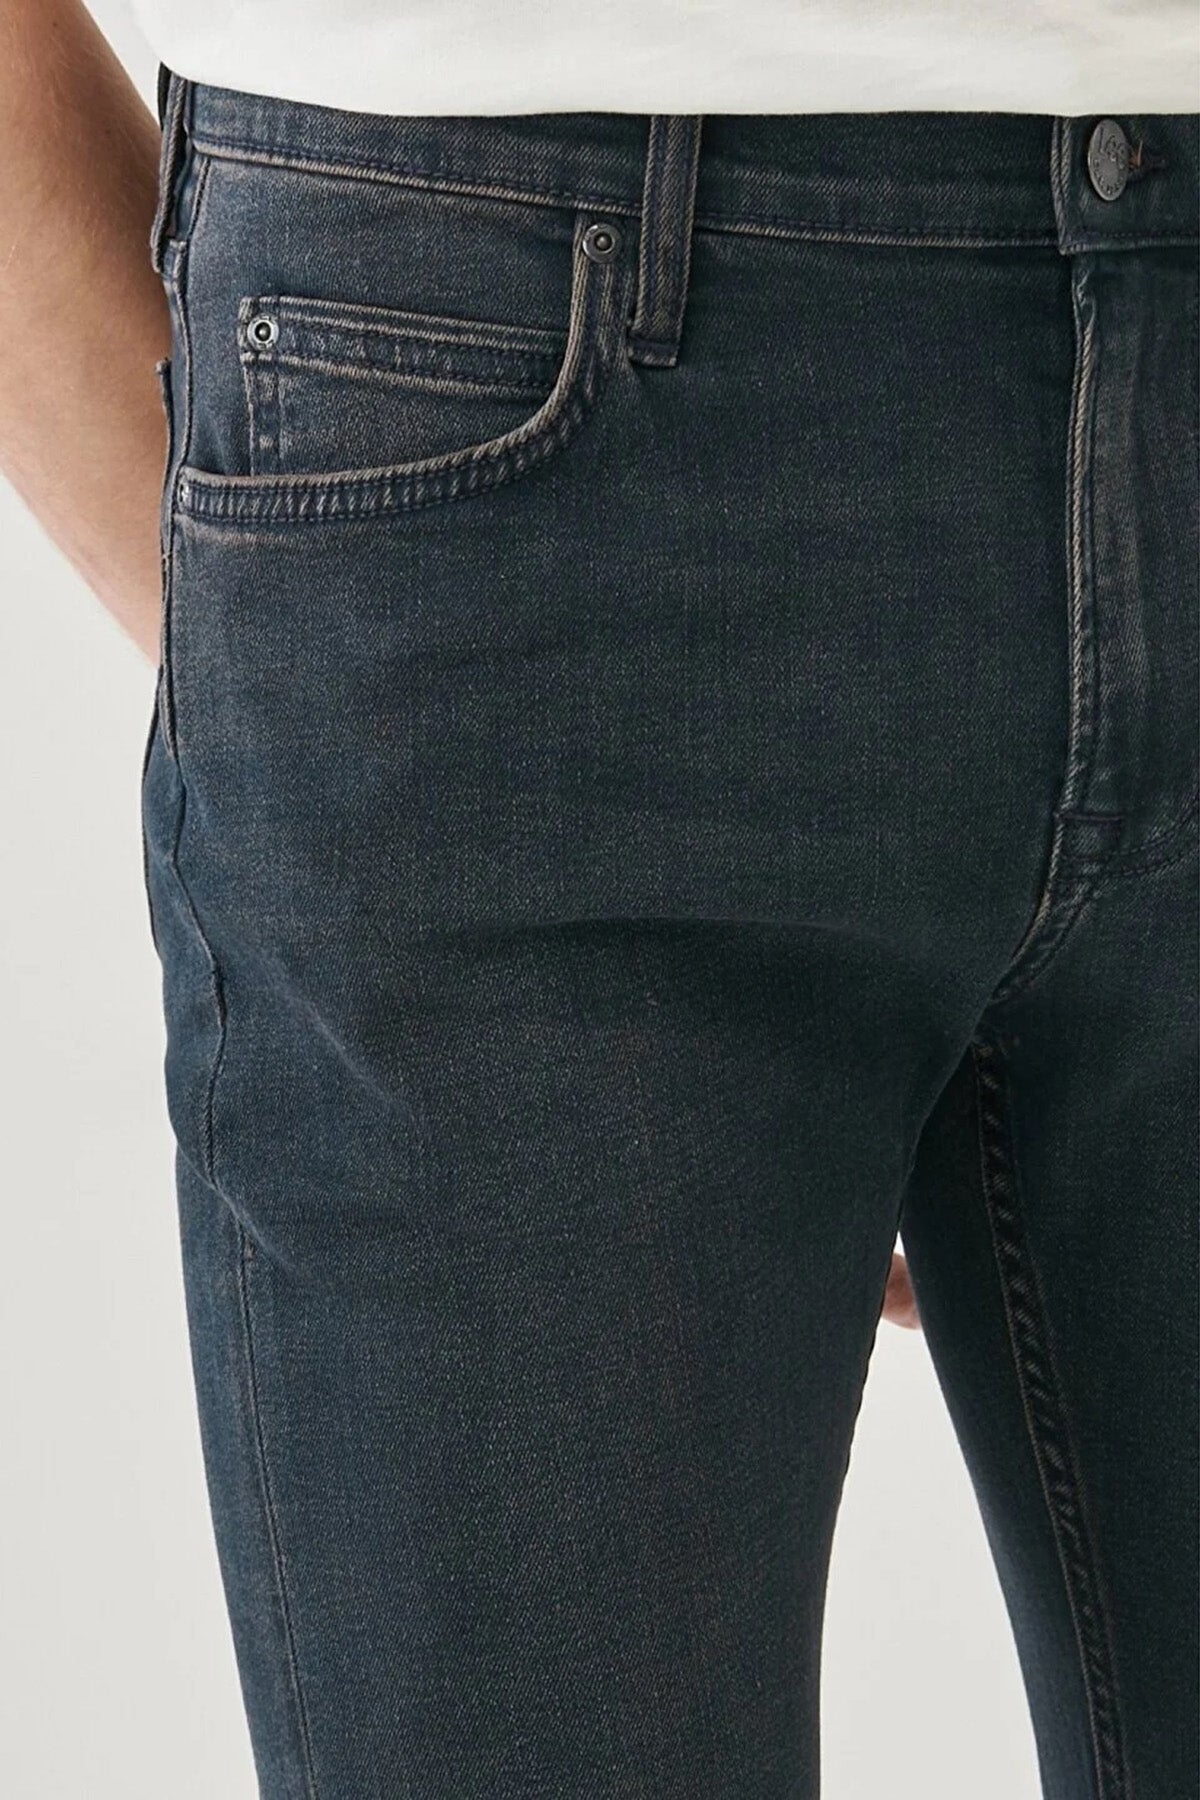 מכנס ג'ינס בגזרת סלים